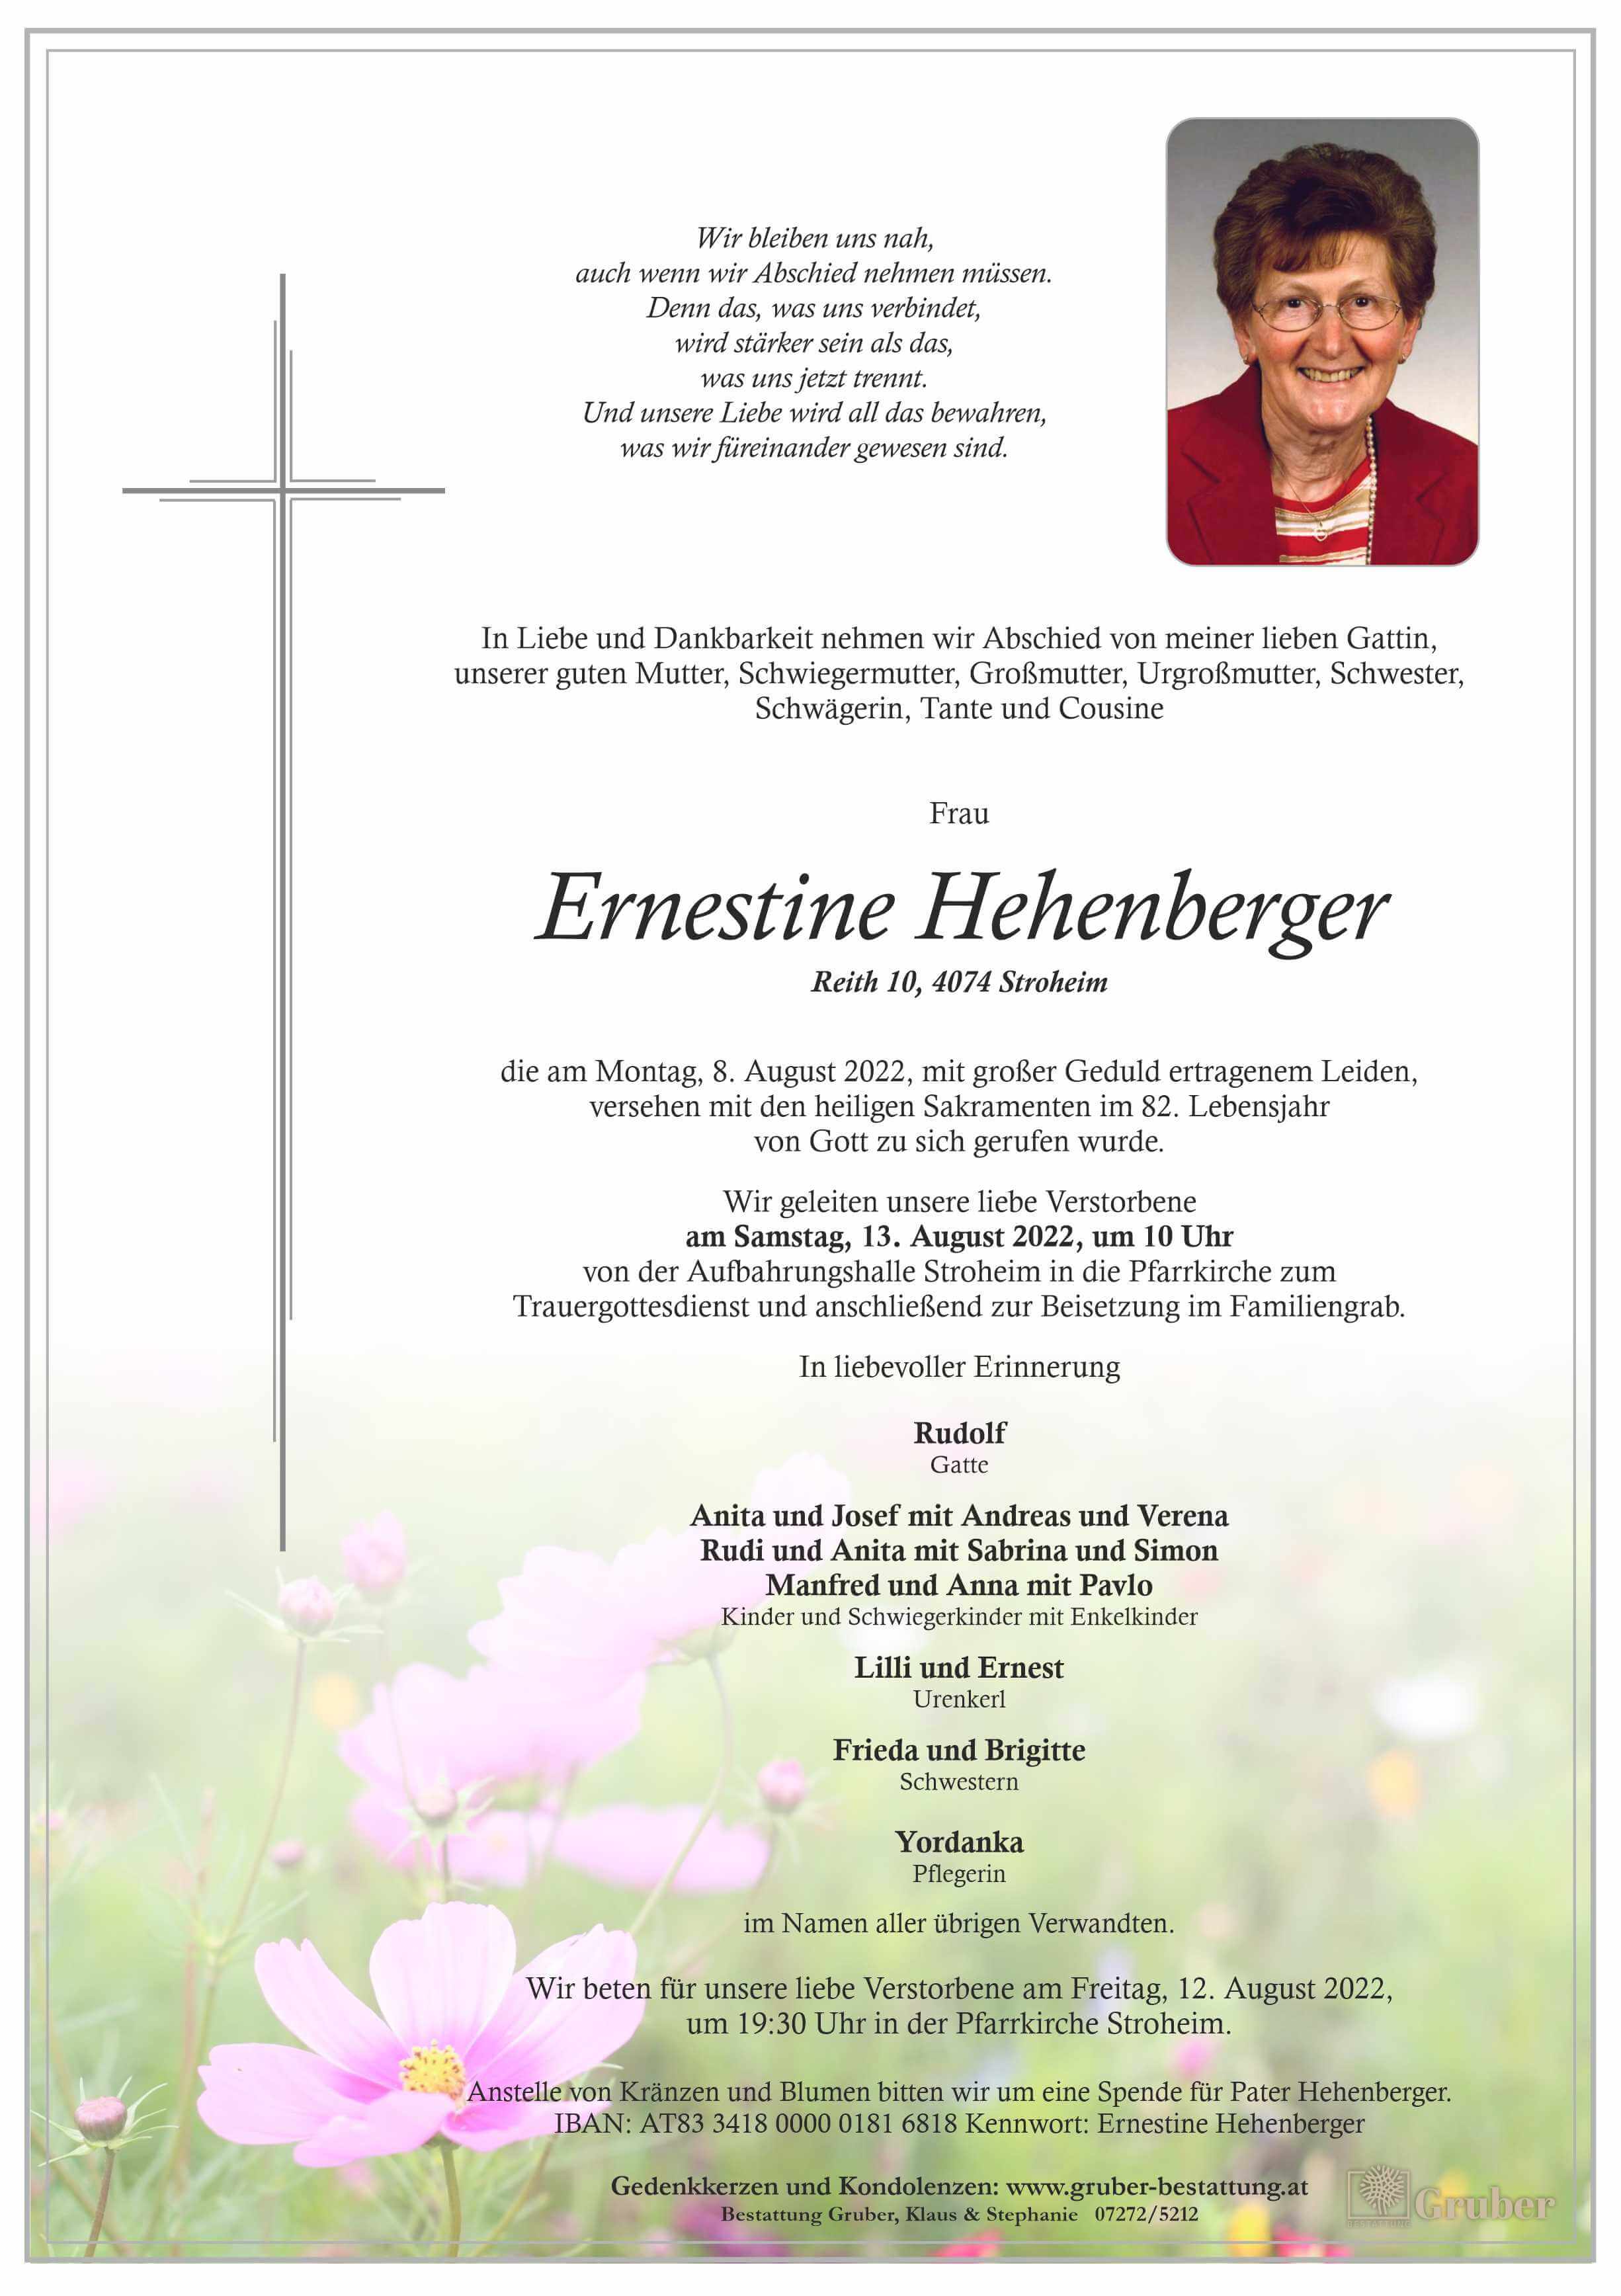 Ernestine Hehenberger (Stroheim)